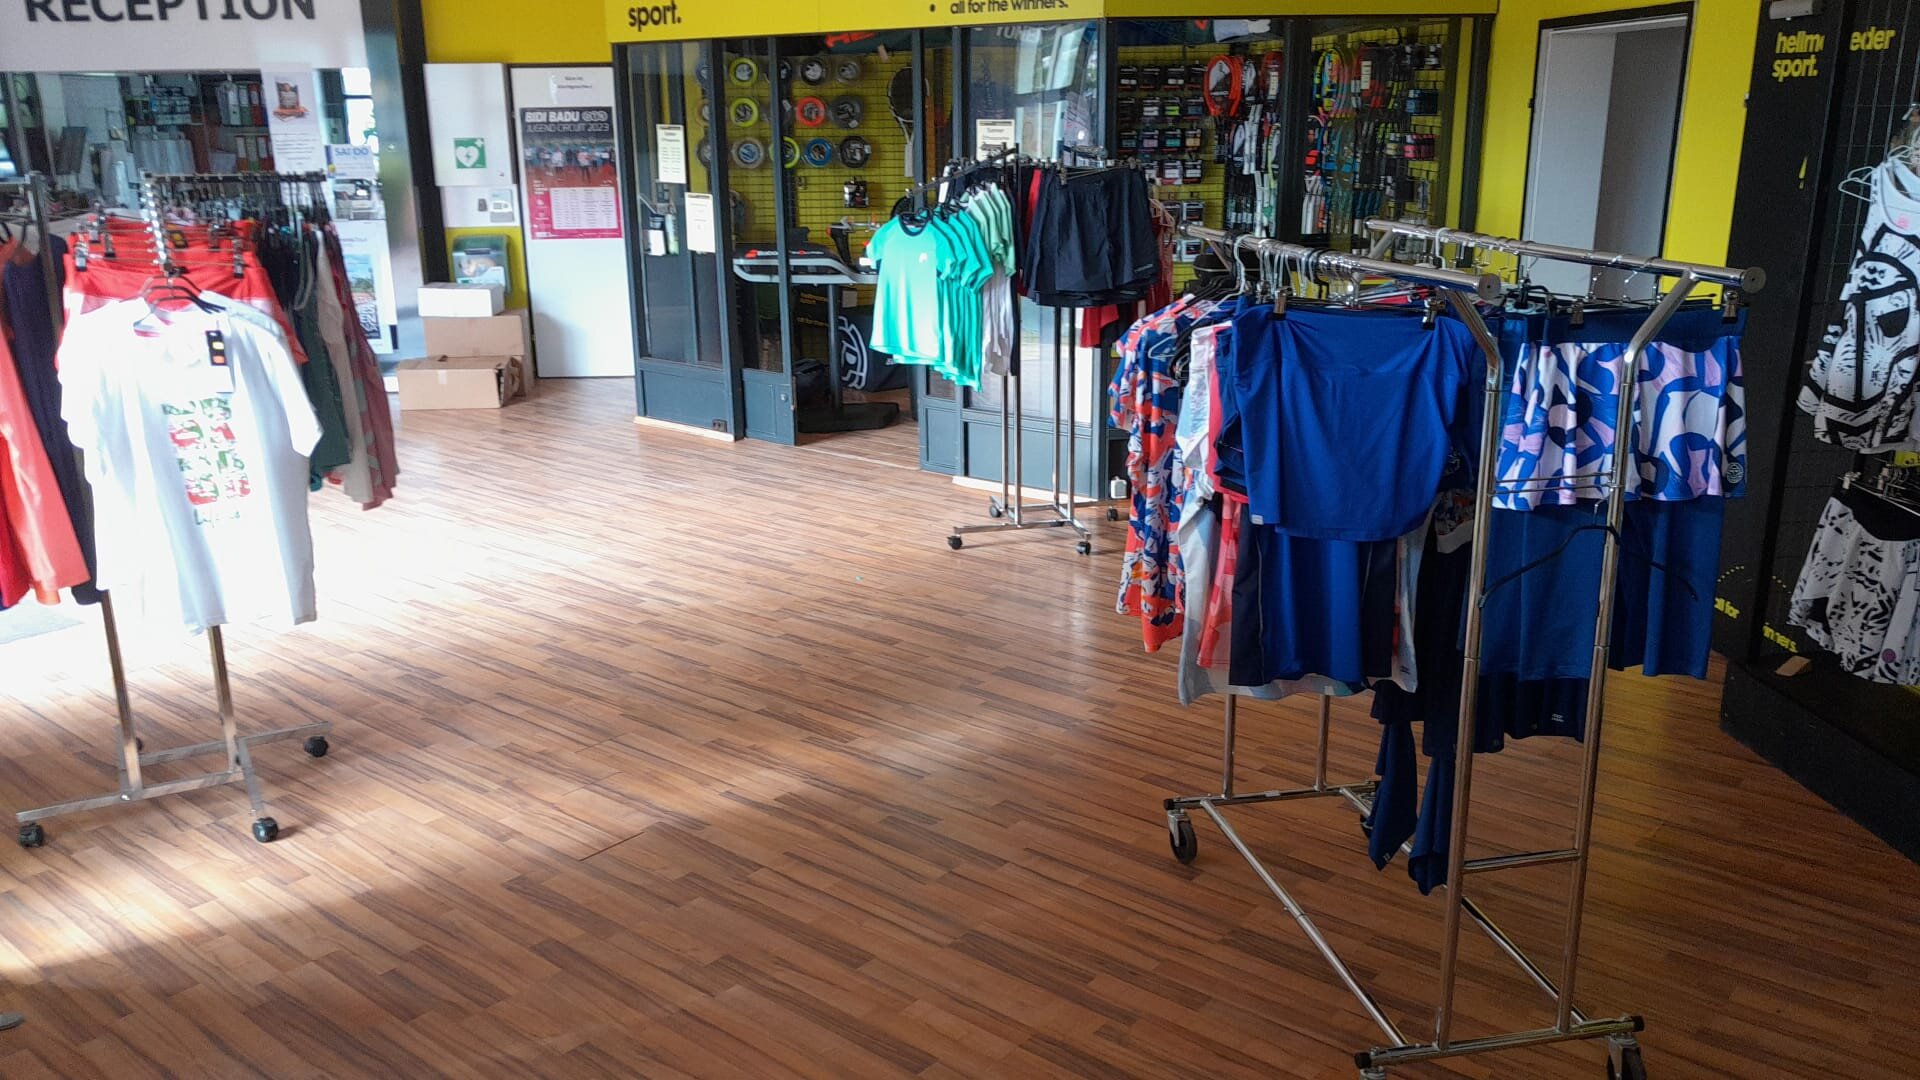 Sportkleidung im Shop La Ville in Wien